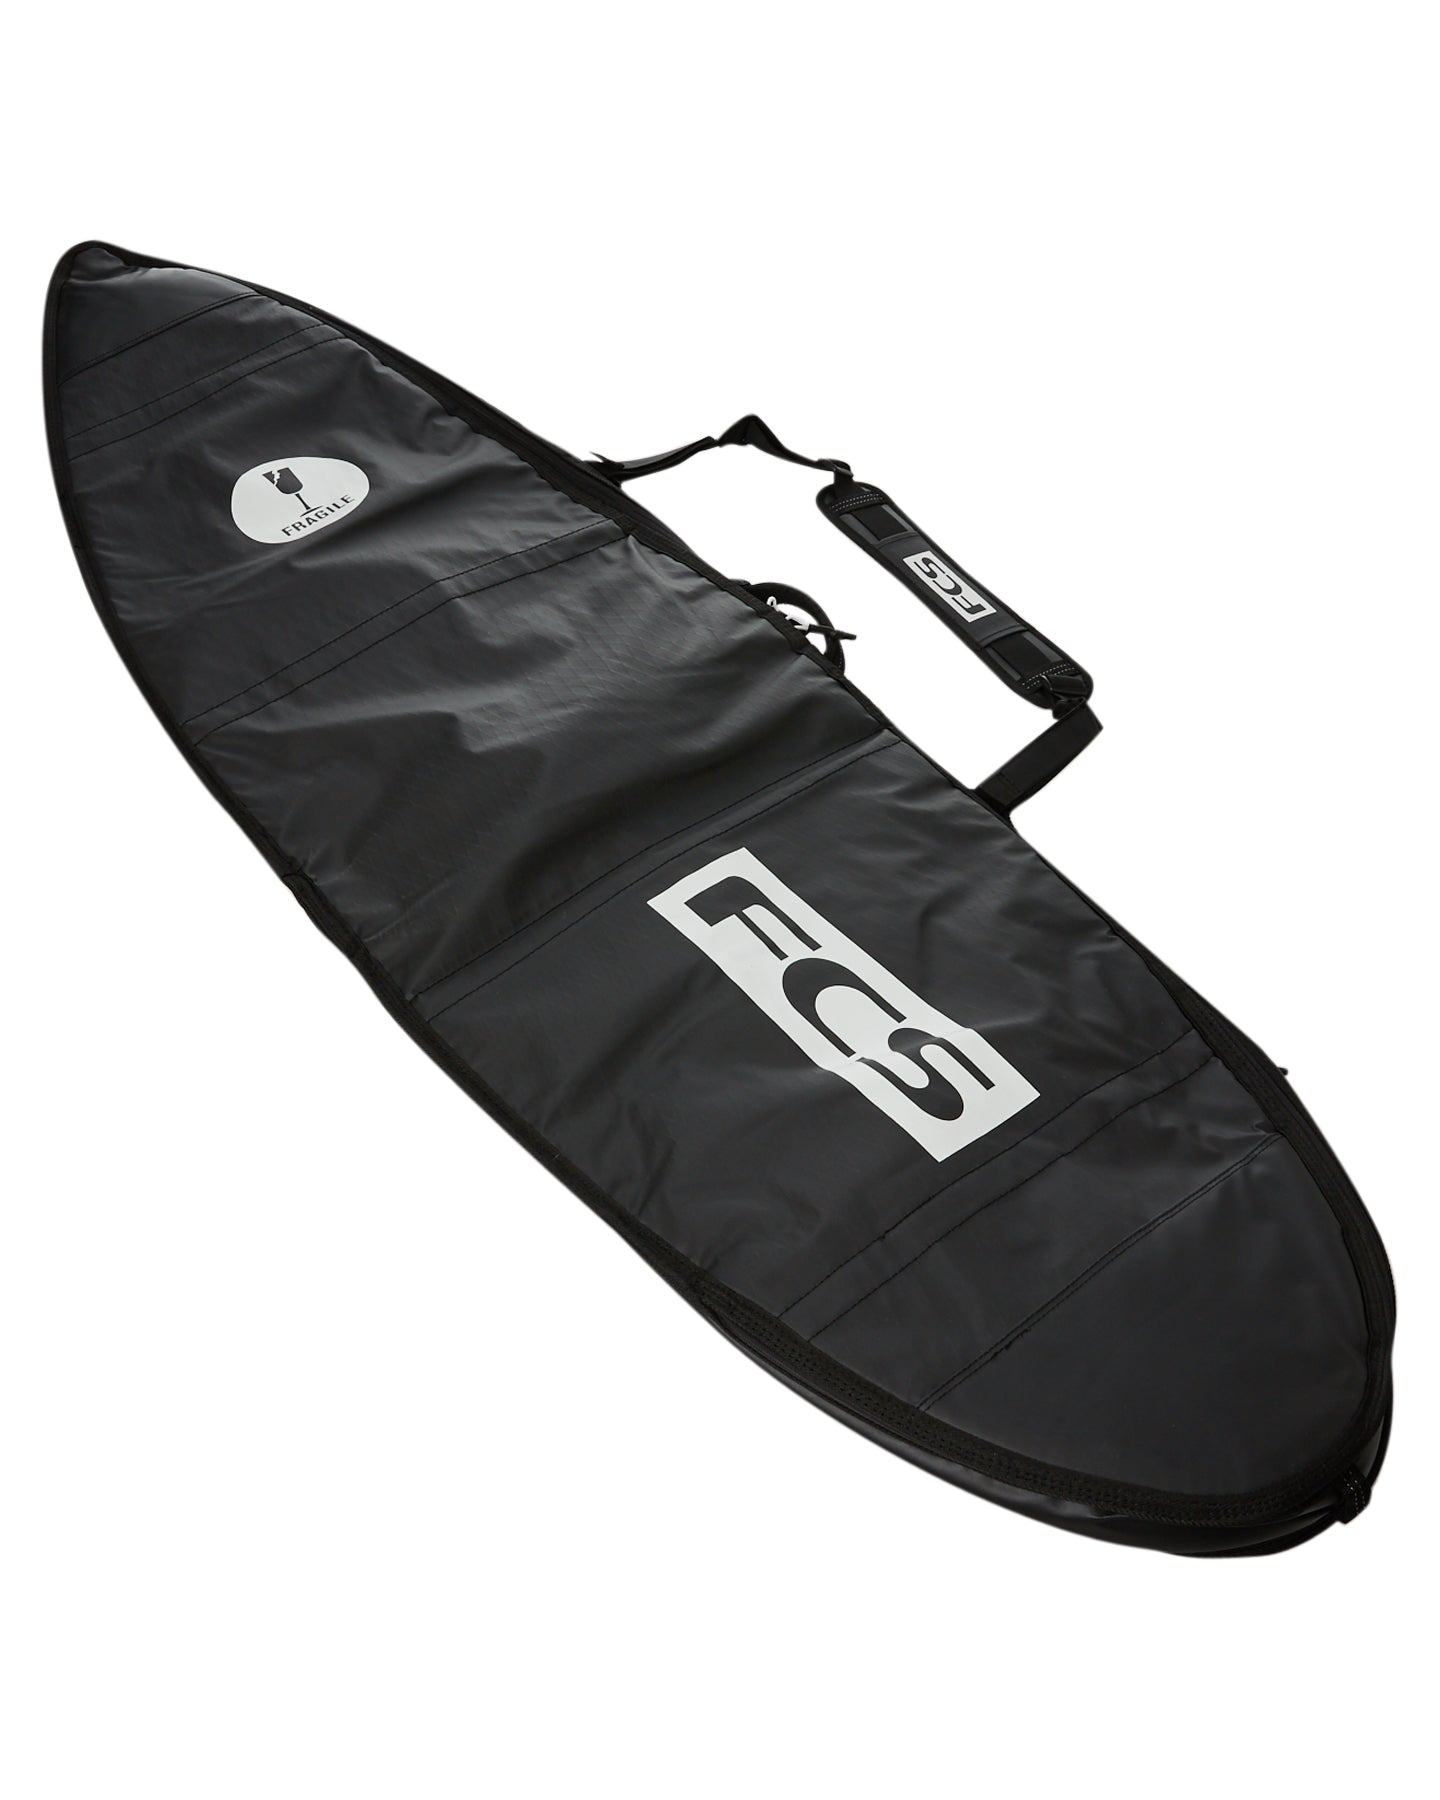 FCS Travel 1 Funboard Boardbag Black-Grey 6ft3in